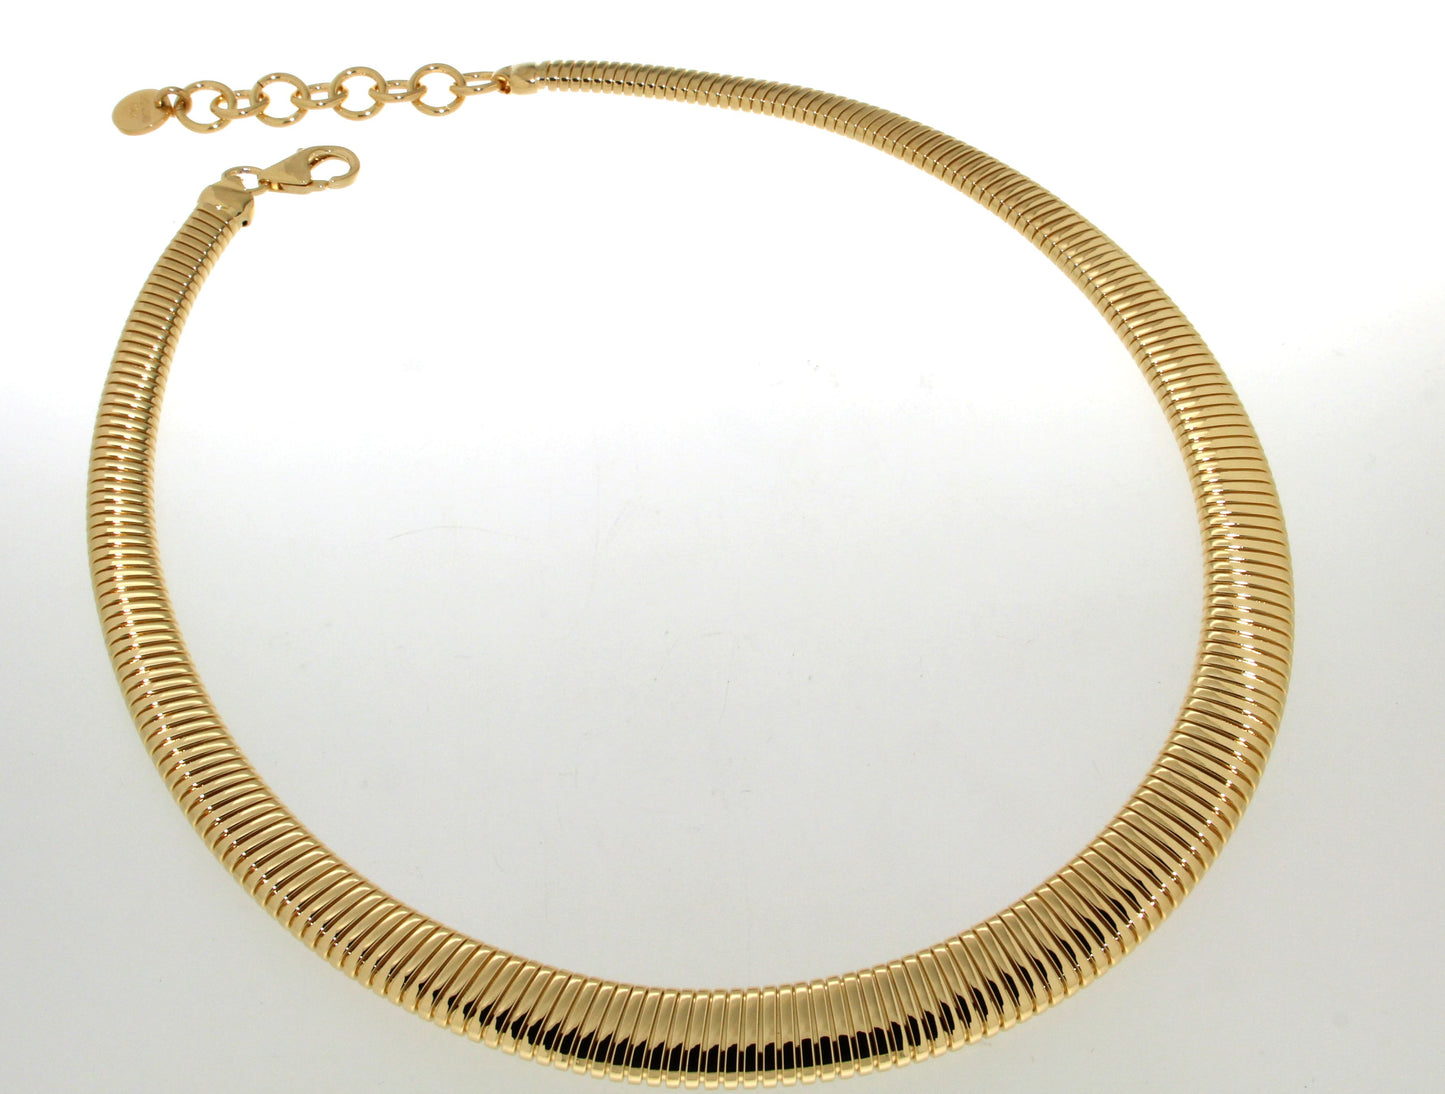 17" 10mm Omega Necklace